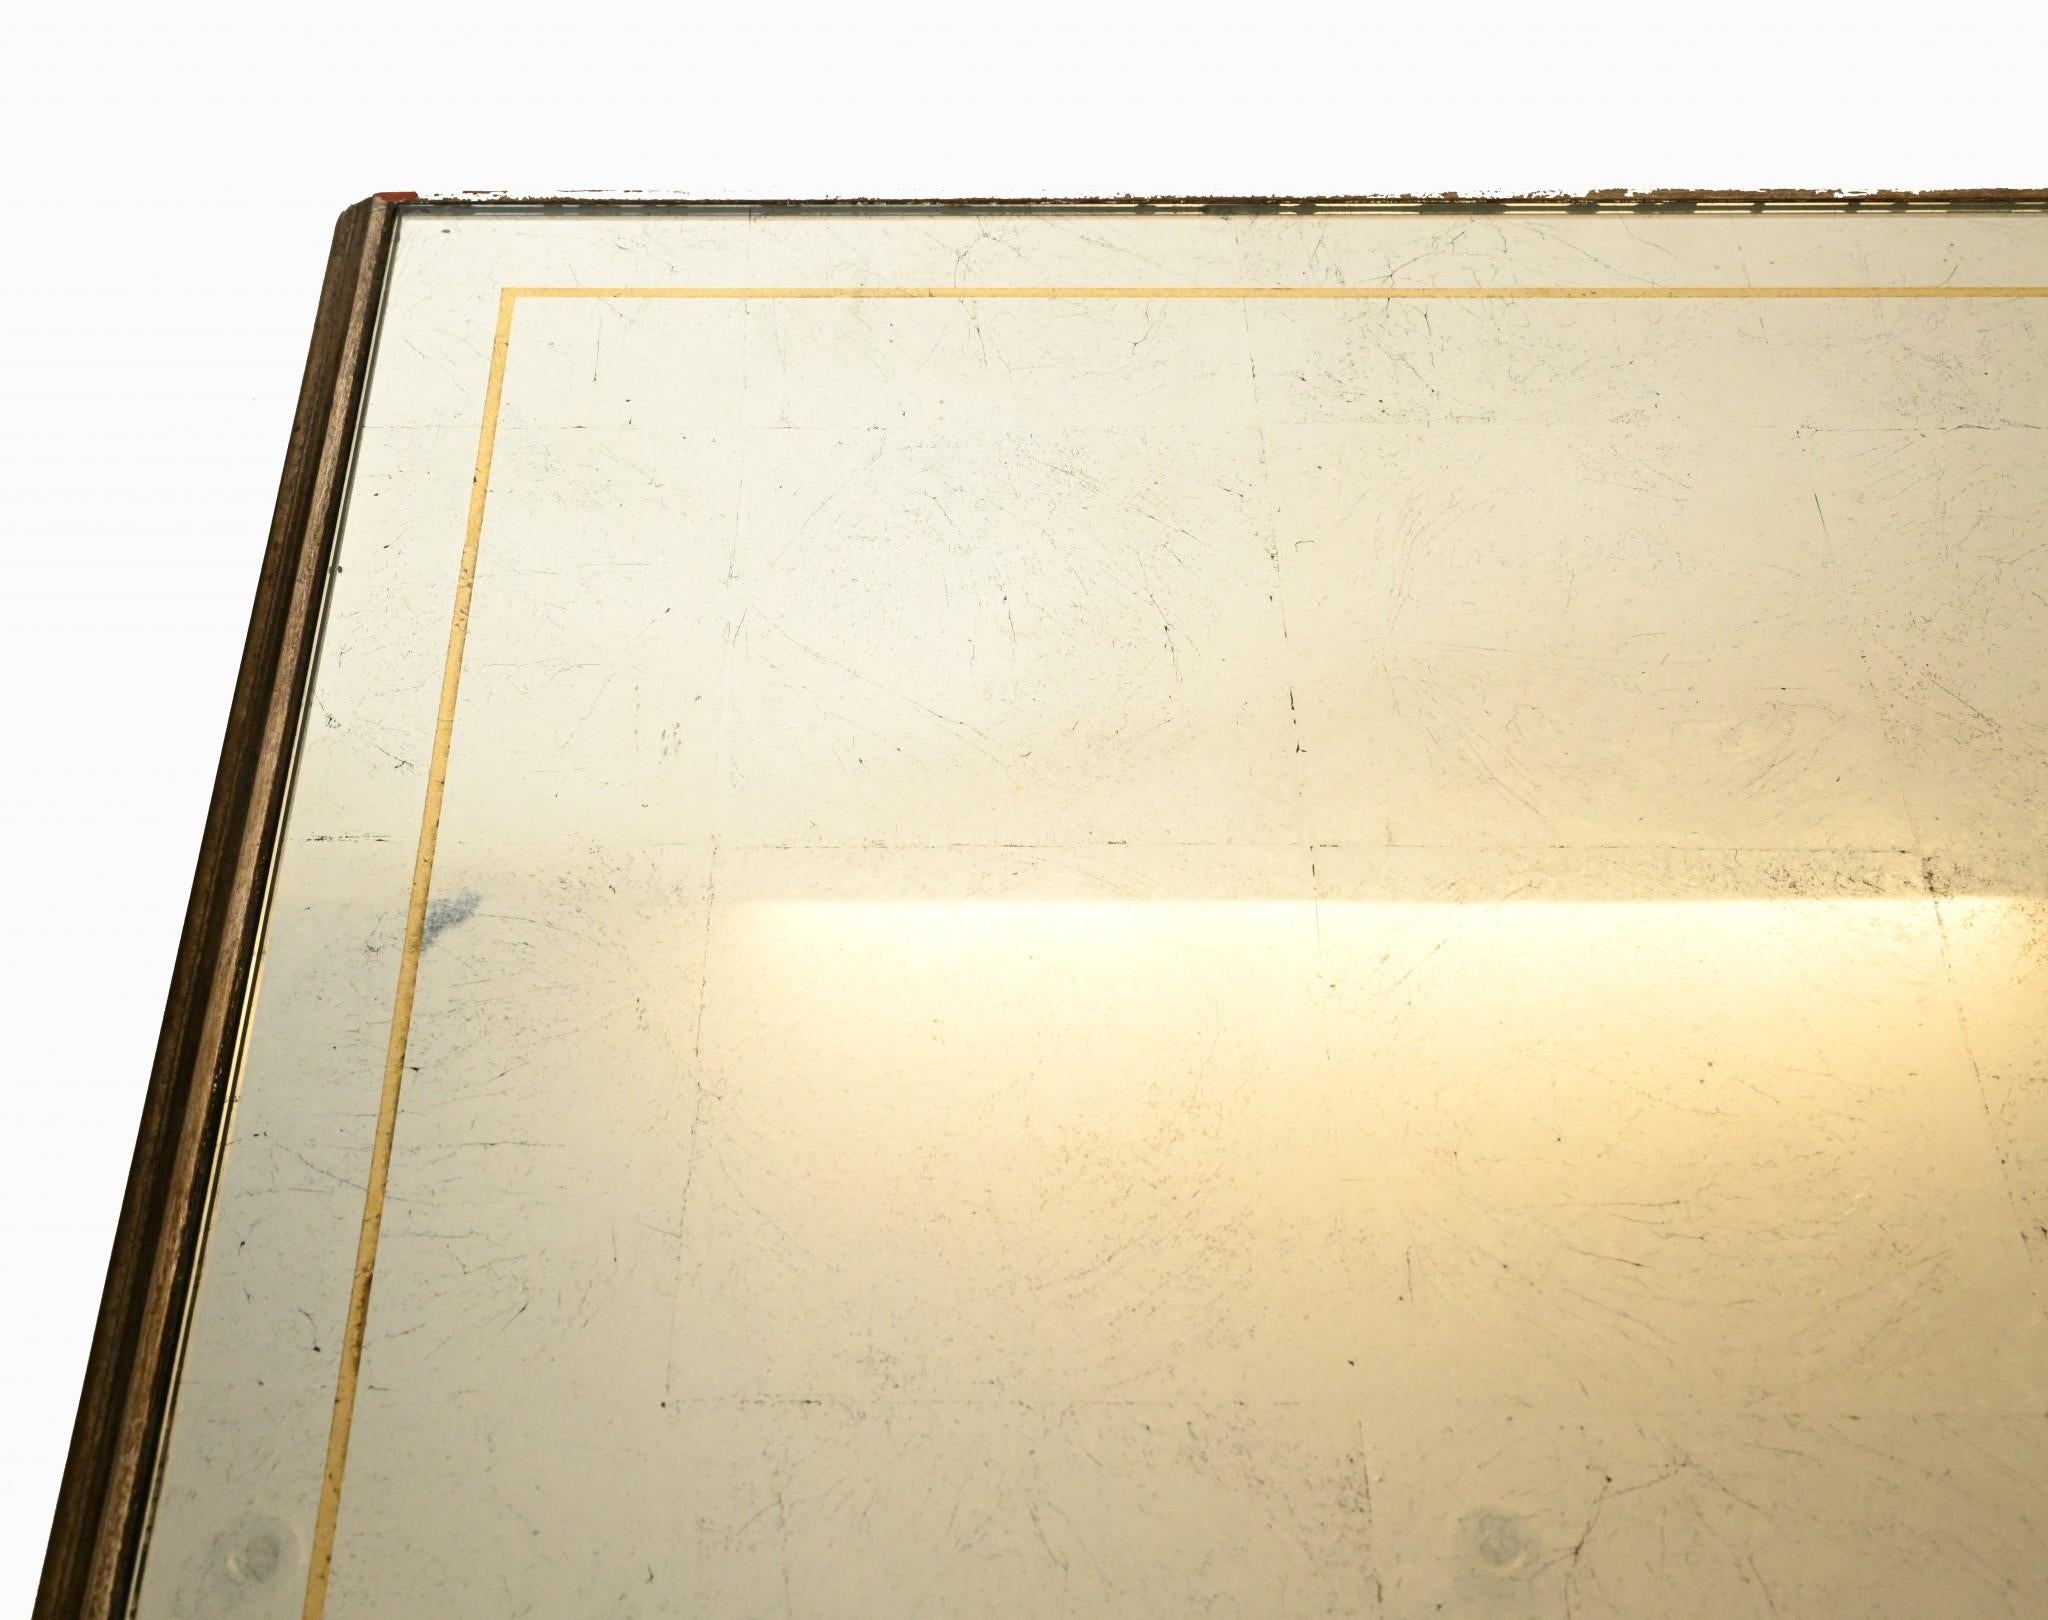 Magnifique table console française moderne du milieu du siècle dernier 
Circa 1950 sur cette pièce cool avec un dessus en verre miroir.
Acheté à un marchand du Marche Biron sur les marchés d'antiquités de Paris.
Visite sur rendez-vous - veuillez